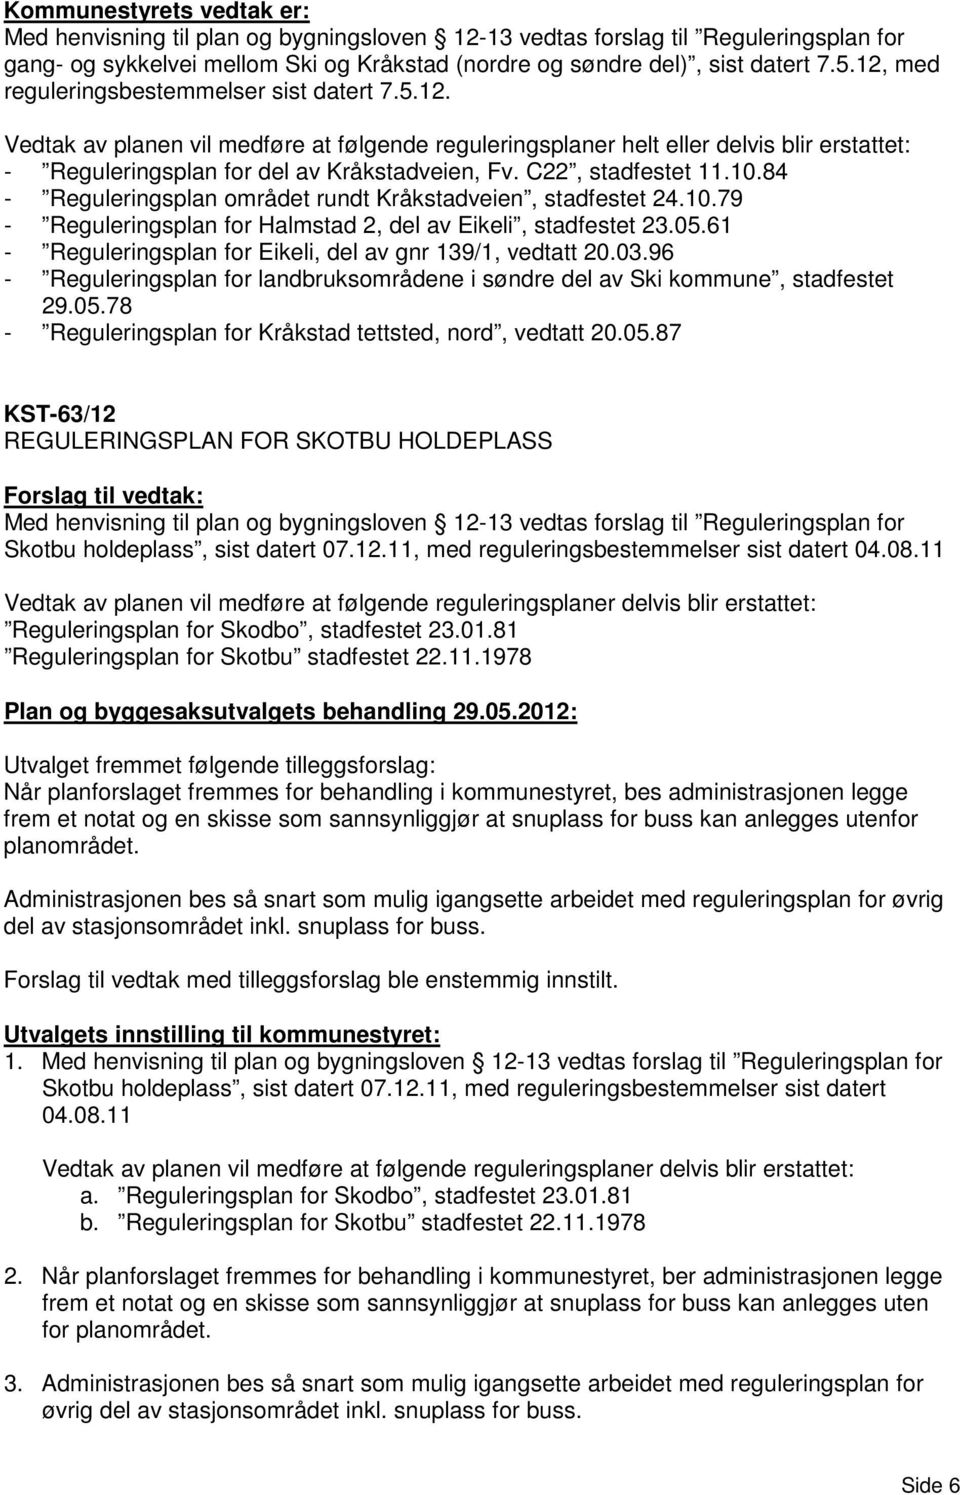 C22, stadfestet 11.10.84 - Reguleringsplan området rundt Kråkstadveien, stadfestet 24.10.79 - Reguleringsplan for Halmstad 2, del av Eikeli, stadfestet 23.05.